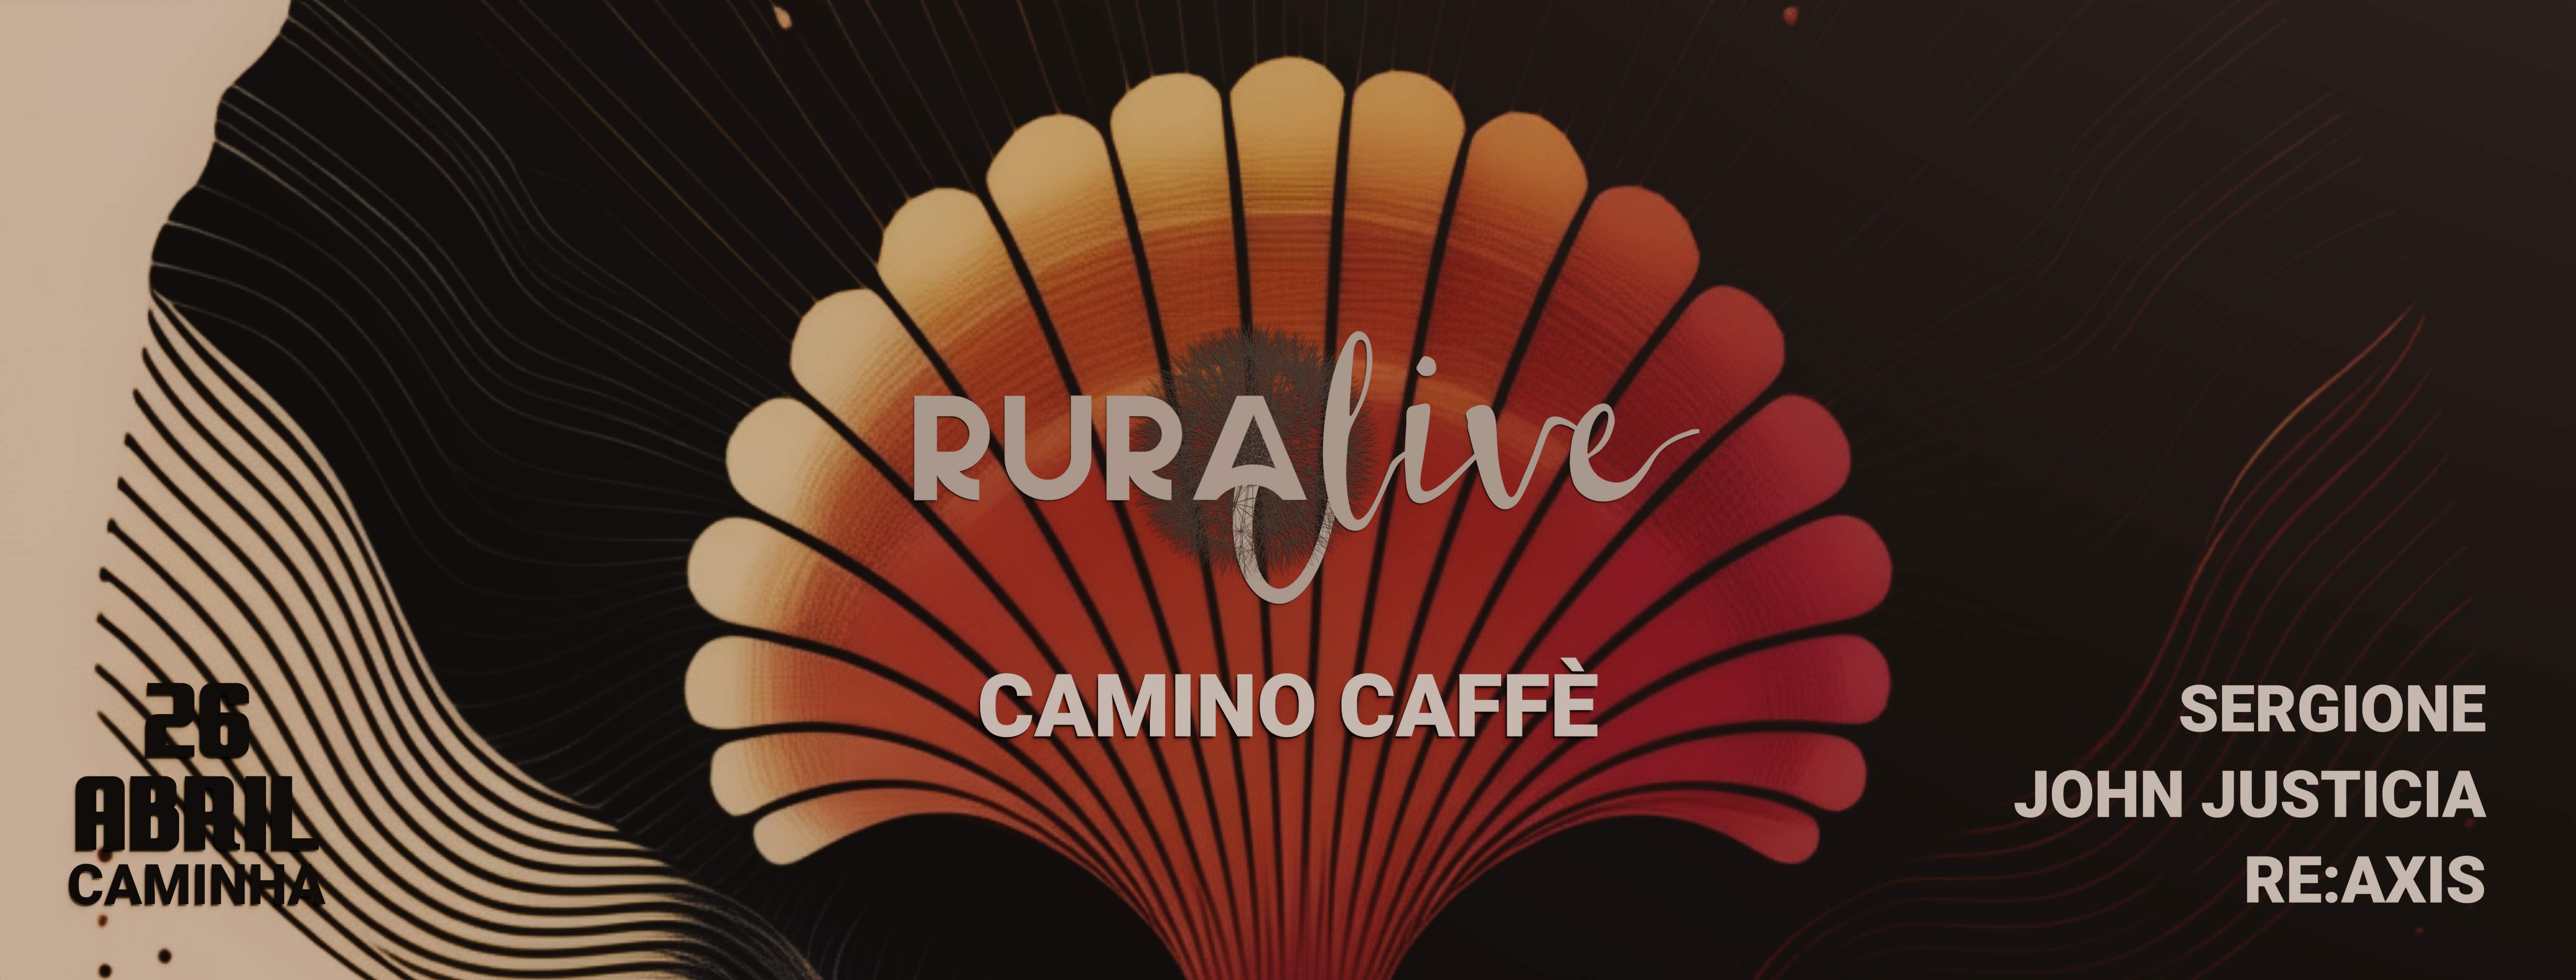 Ruralive - Camino Caffè - 1st edition - フライヤー裏